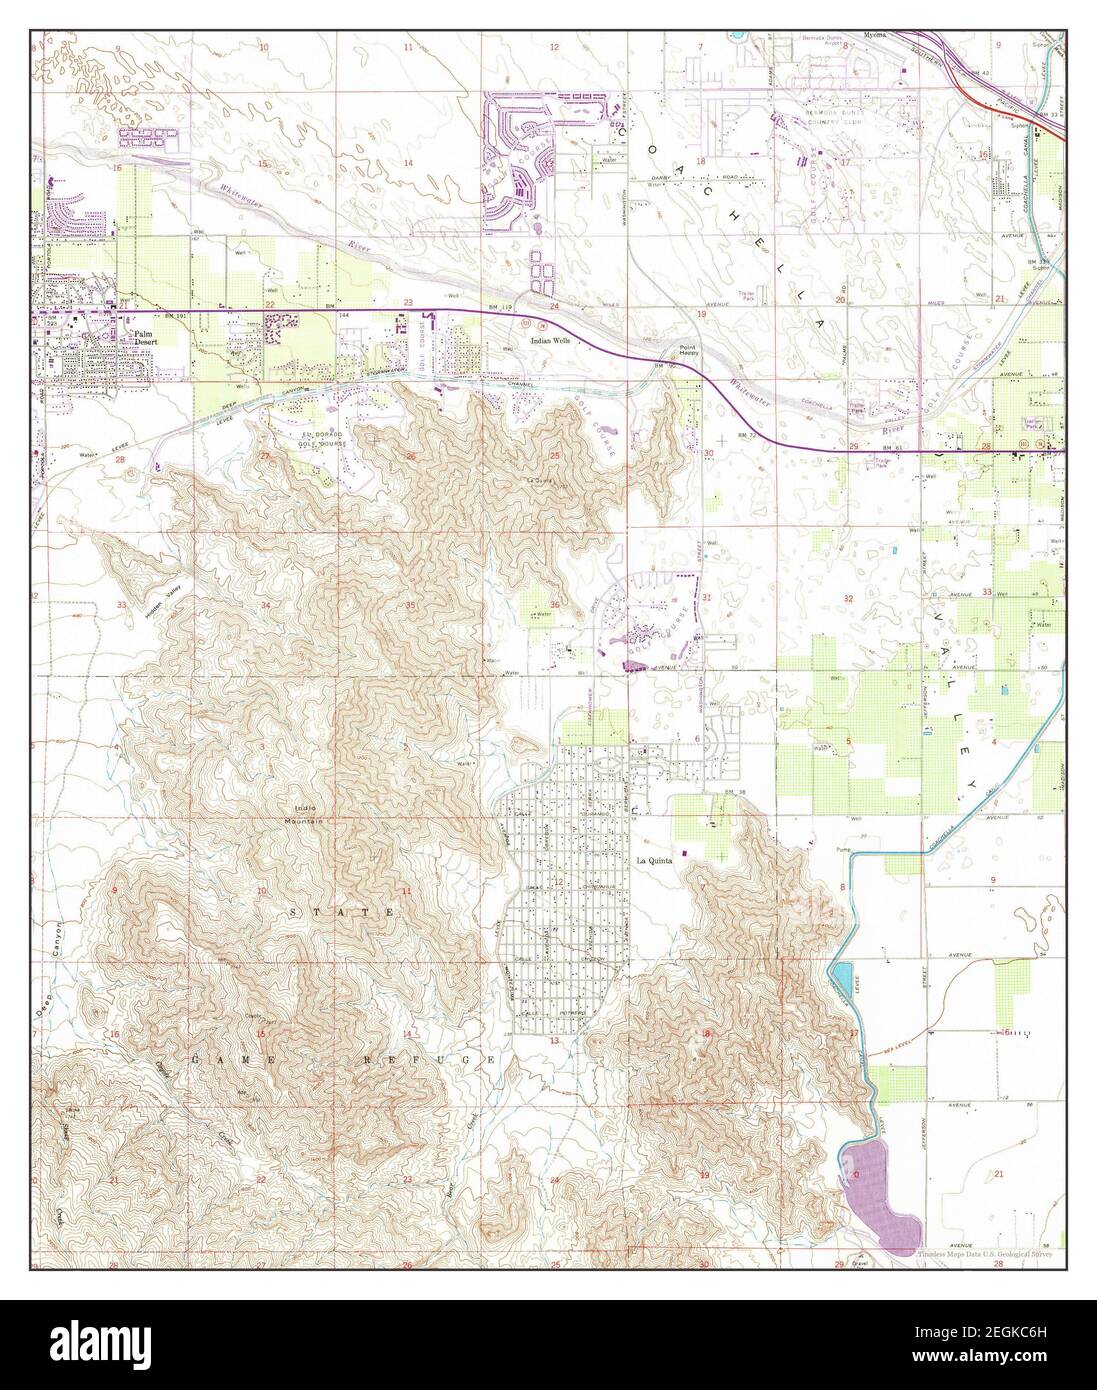 La Quinta, California, Karte 1959, 1:24000, Vereinigte Staaten von Amerika von Timeless Maps, Daten U.S. Geological Survey Stockfoto